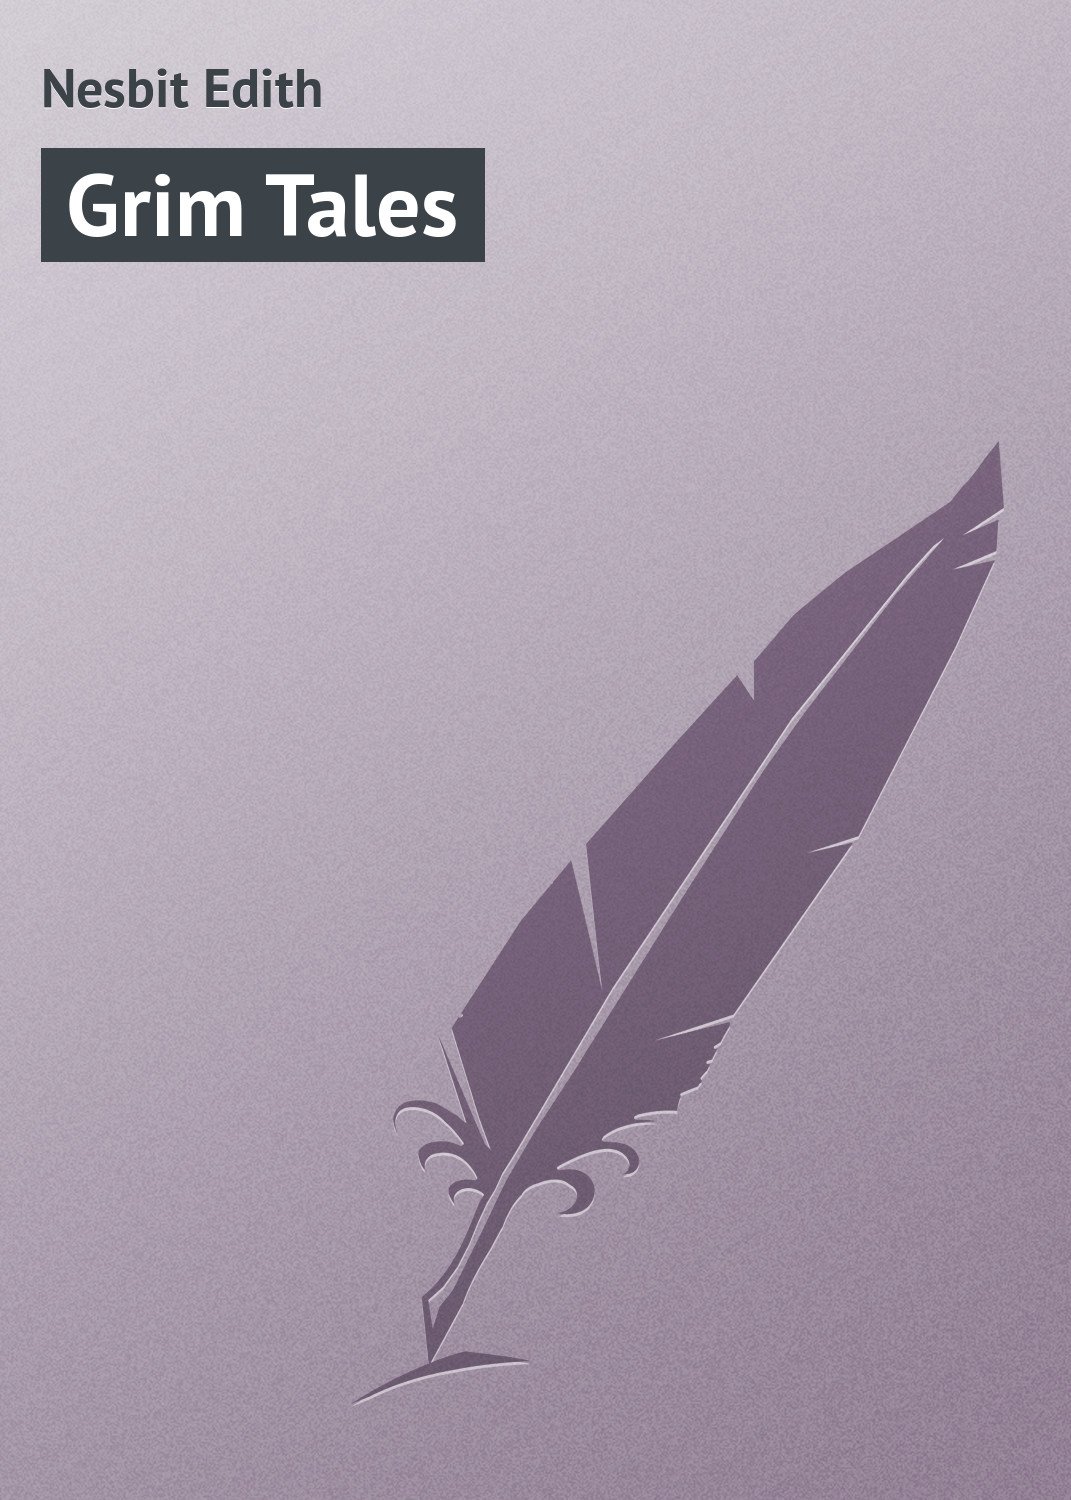 Книга Grim Tales из серии , созданная Edith Nesbit, может относится к жанру Зарубежная классика. Стоимость электронной книги Grim Tales с идентификатором 23160323 составляет 5.99 руб.